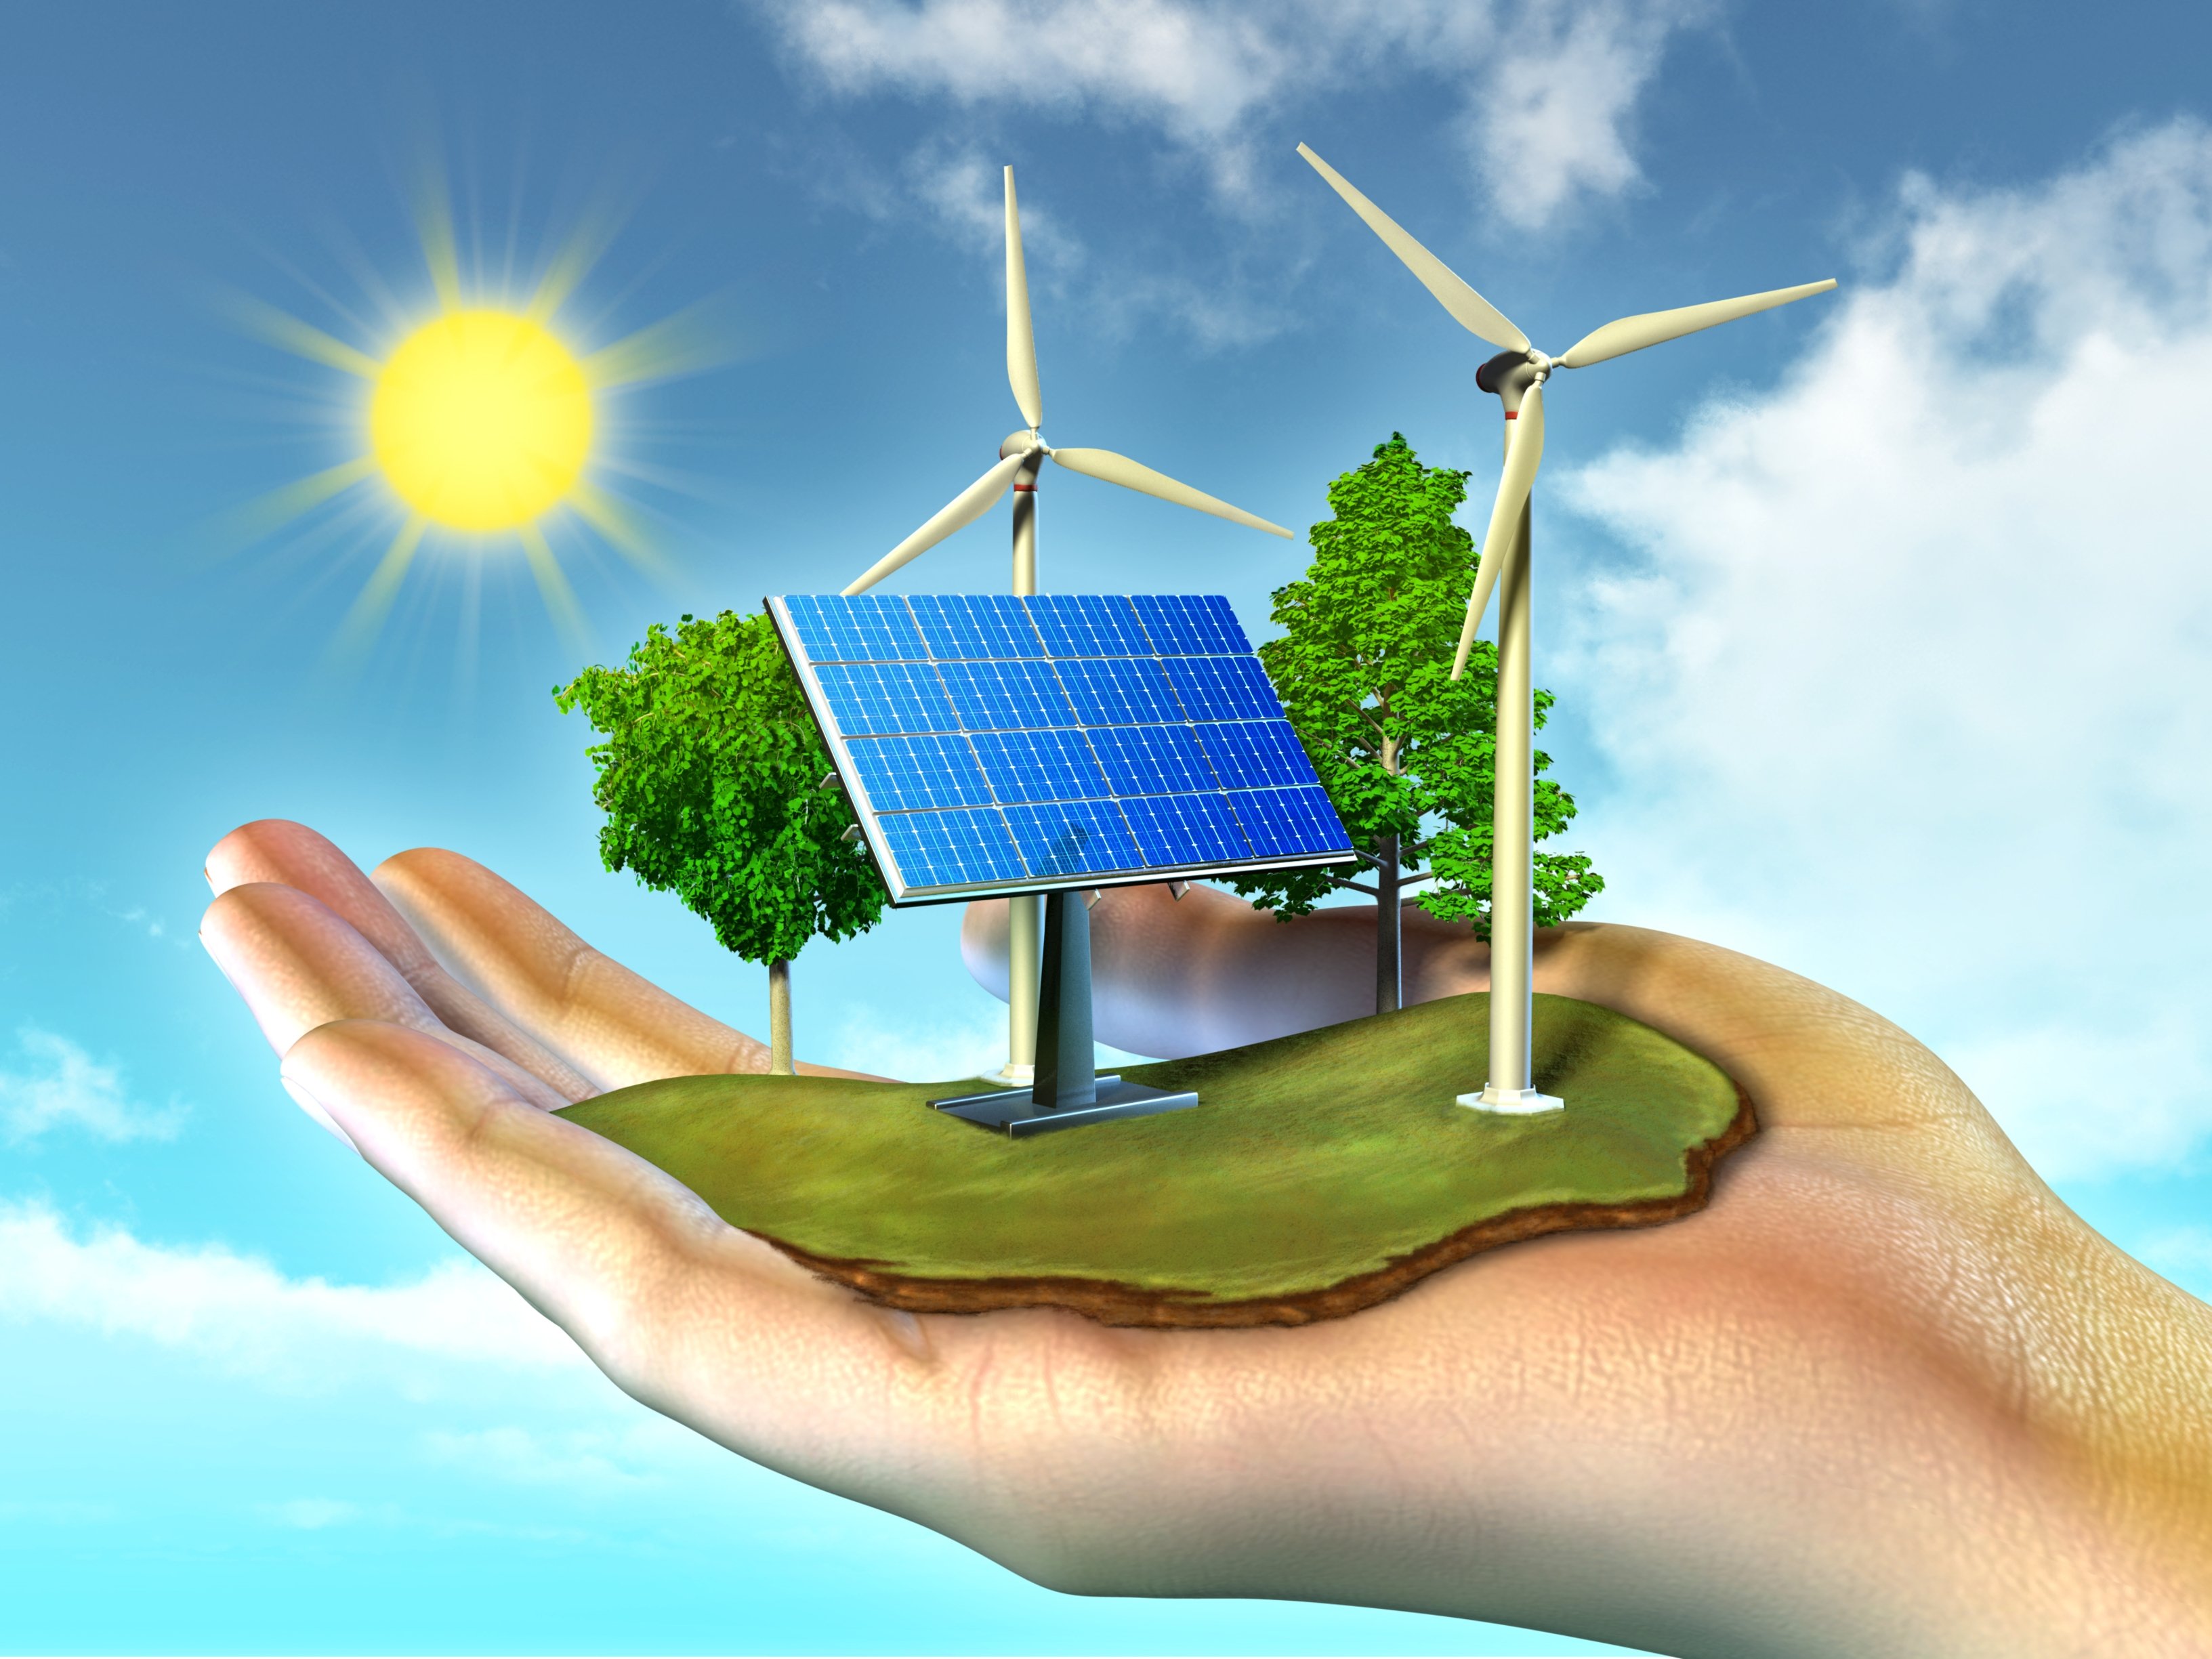 Физическим и природным воздействиям. Солнечная энергия ВИЭ. Возобновляемые источники энергии (ВИЭ). Альтернативная Энергетика. Зеленая Энергетика.